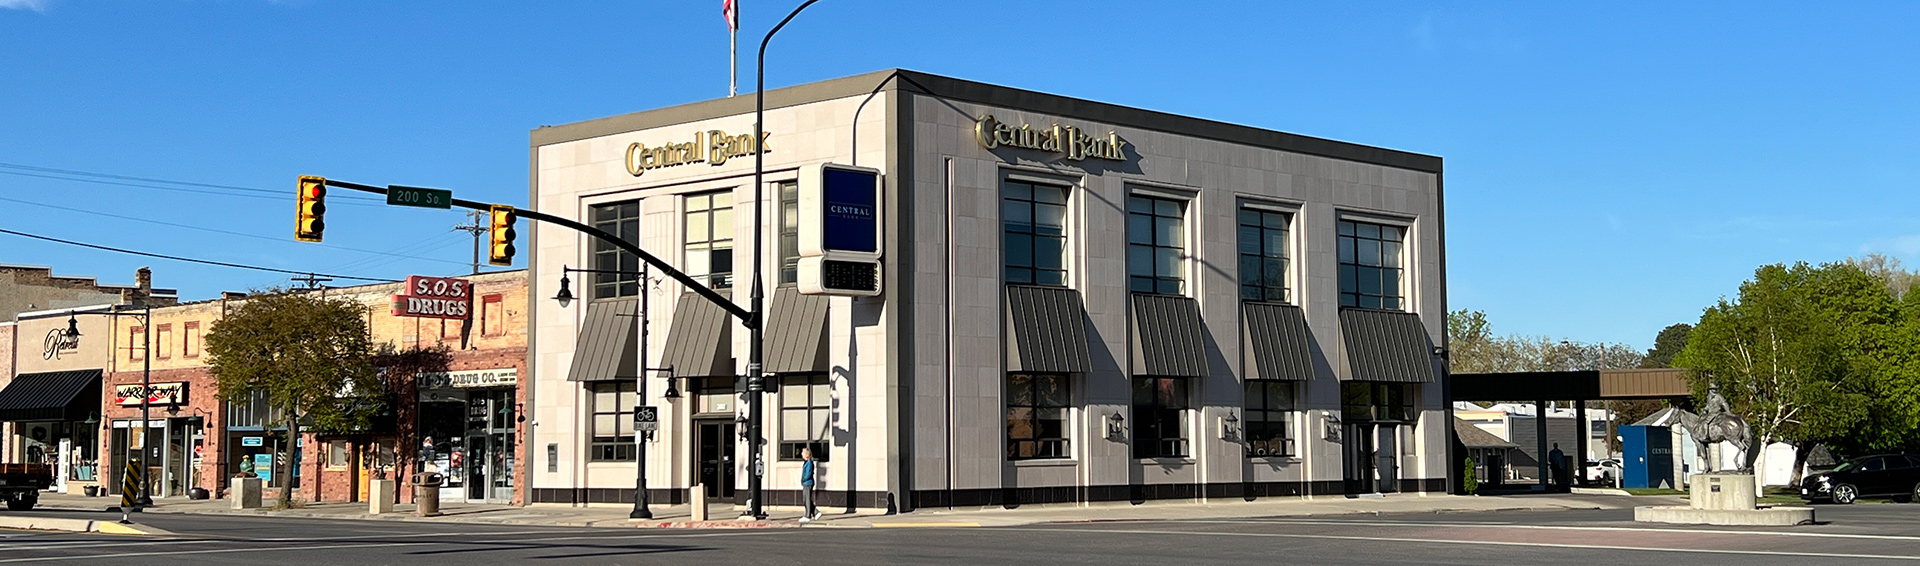 Central Bank in Springville, Utah